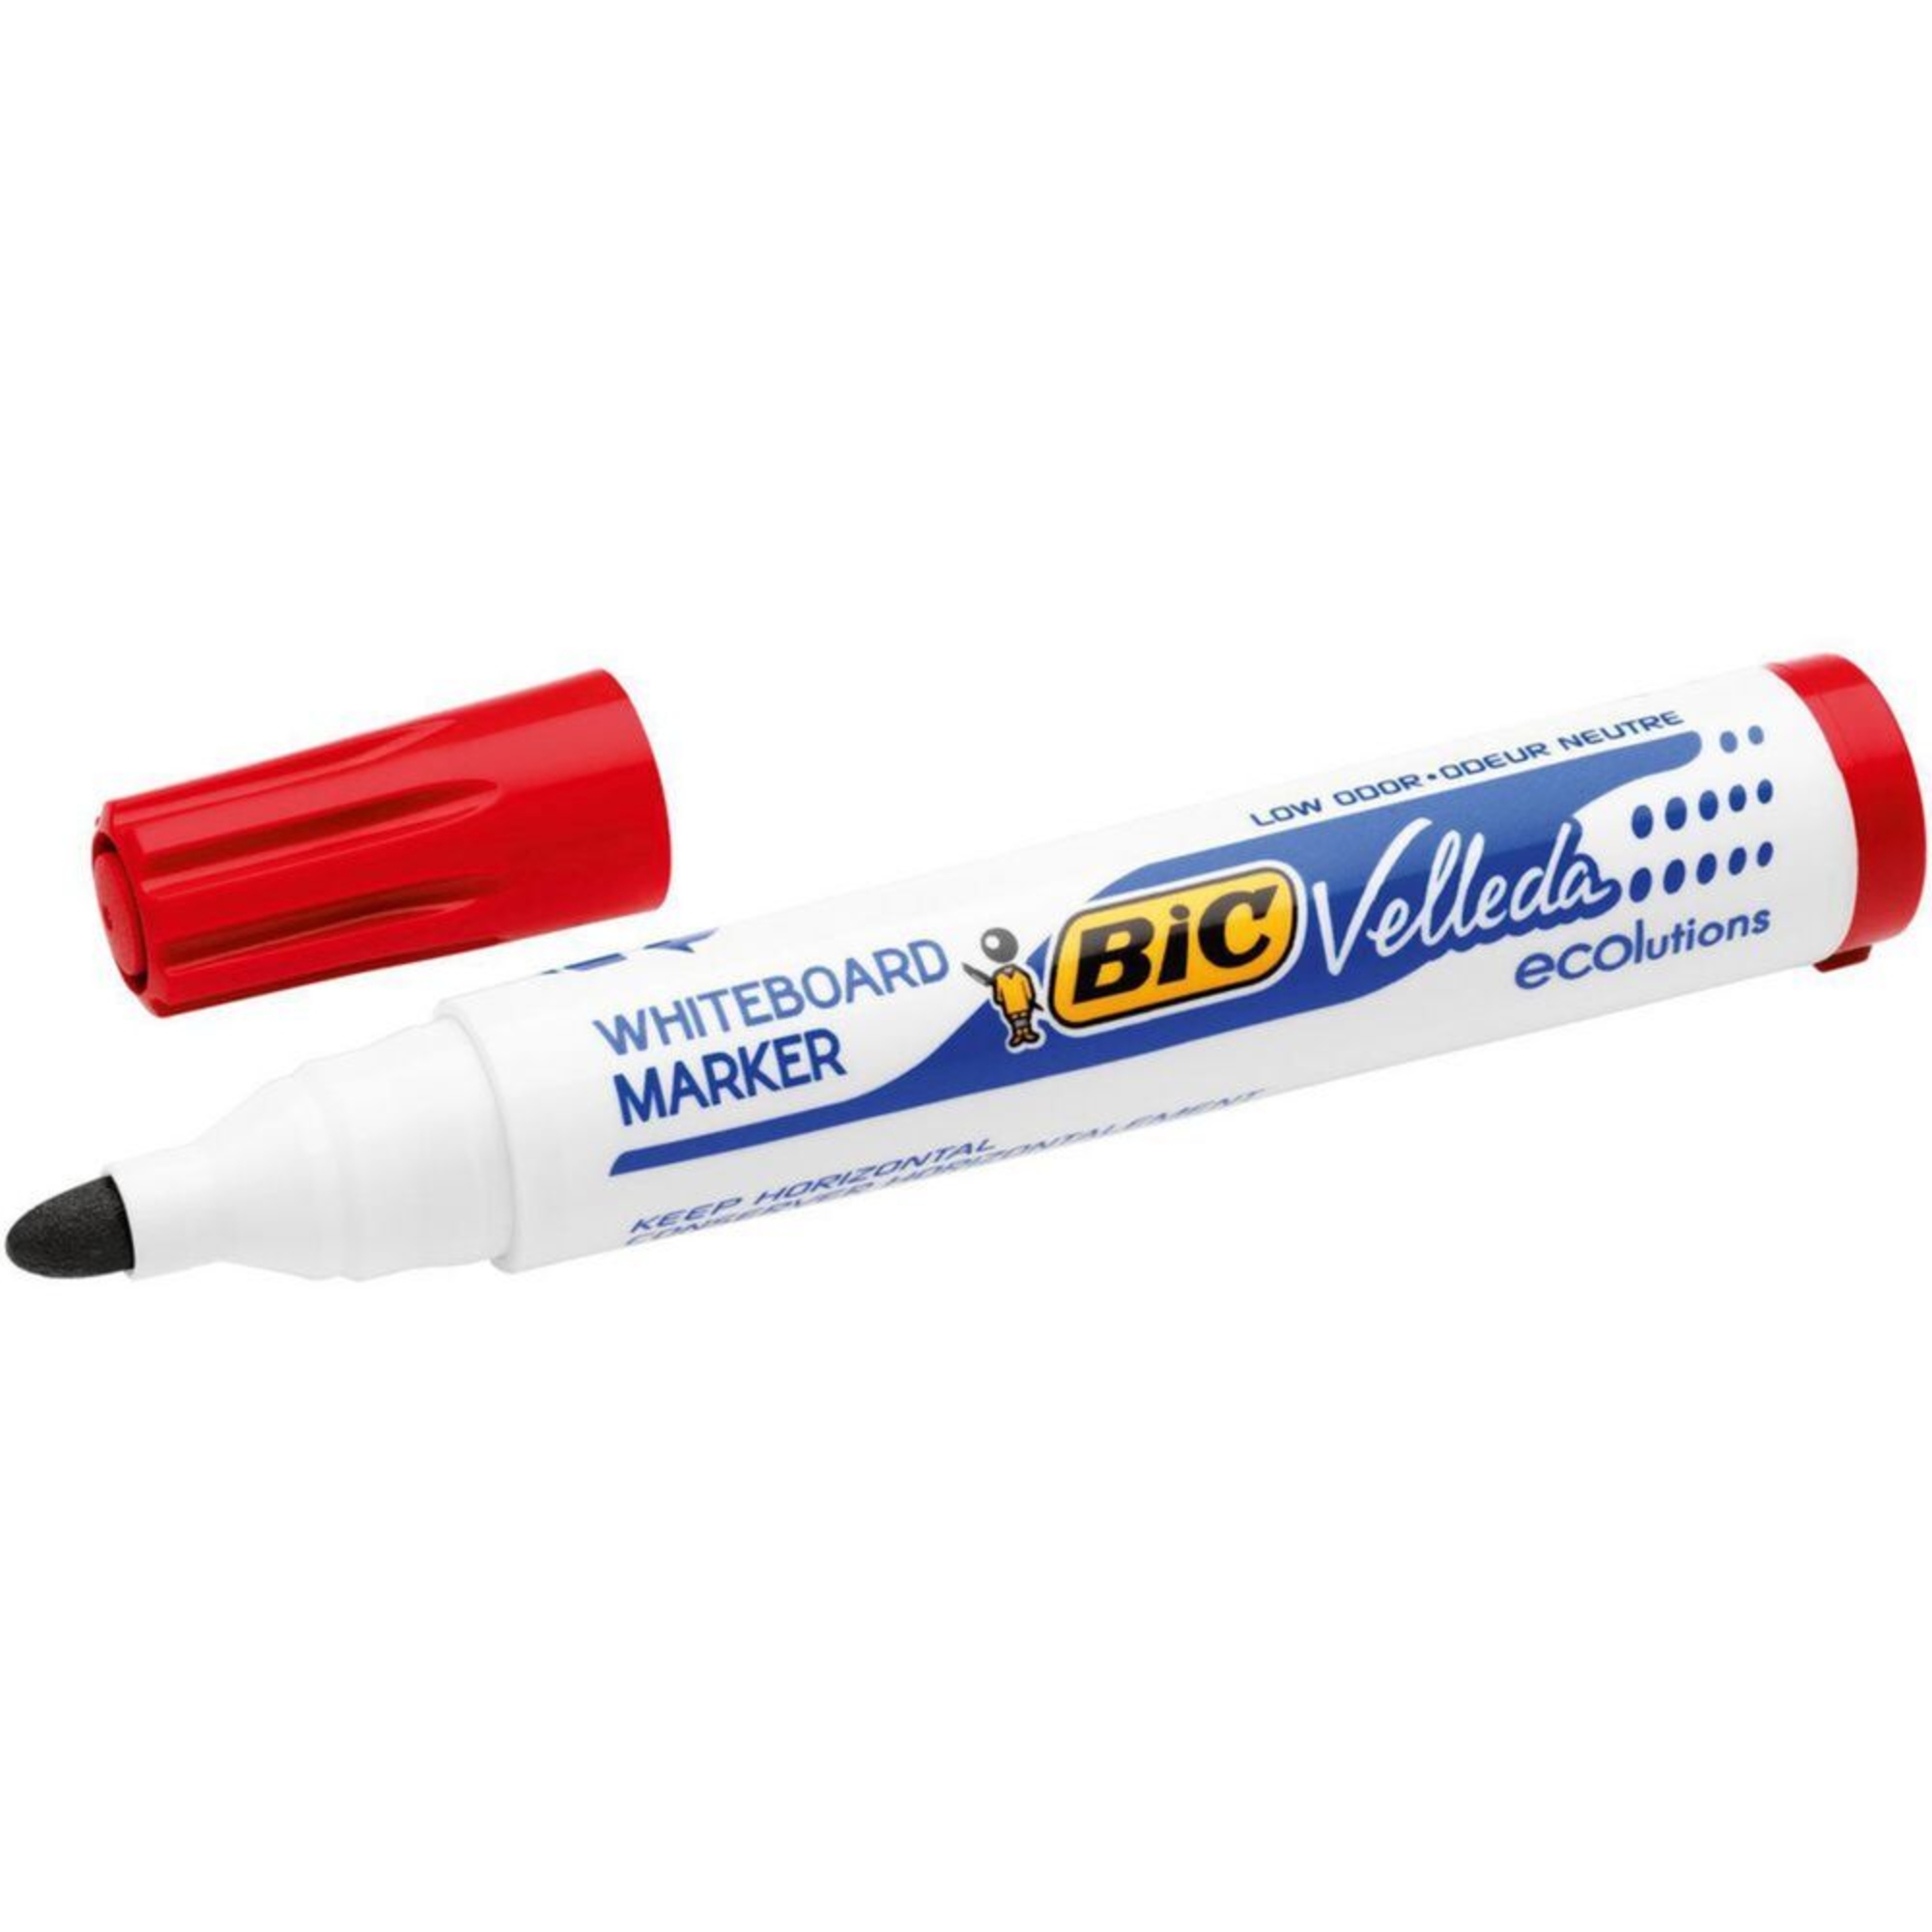 Marcador Quadro Branco Velleda®, Ponta Larga de 1,5 mm, Tinta Vermelha, Embalagem de 12 Unidades